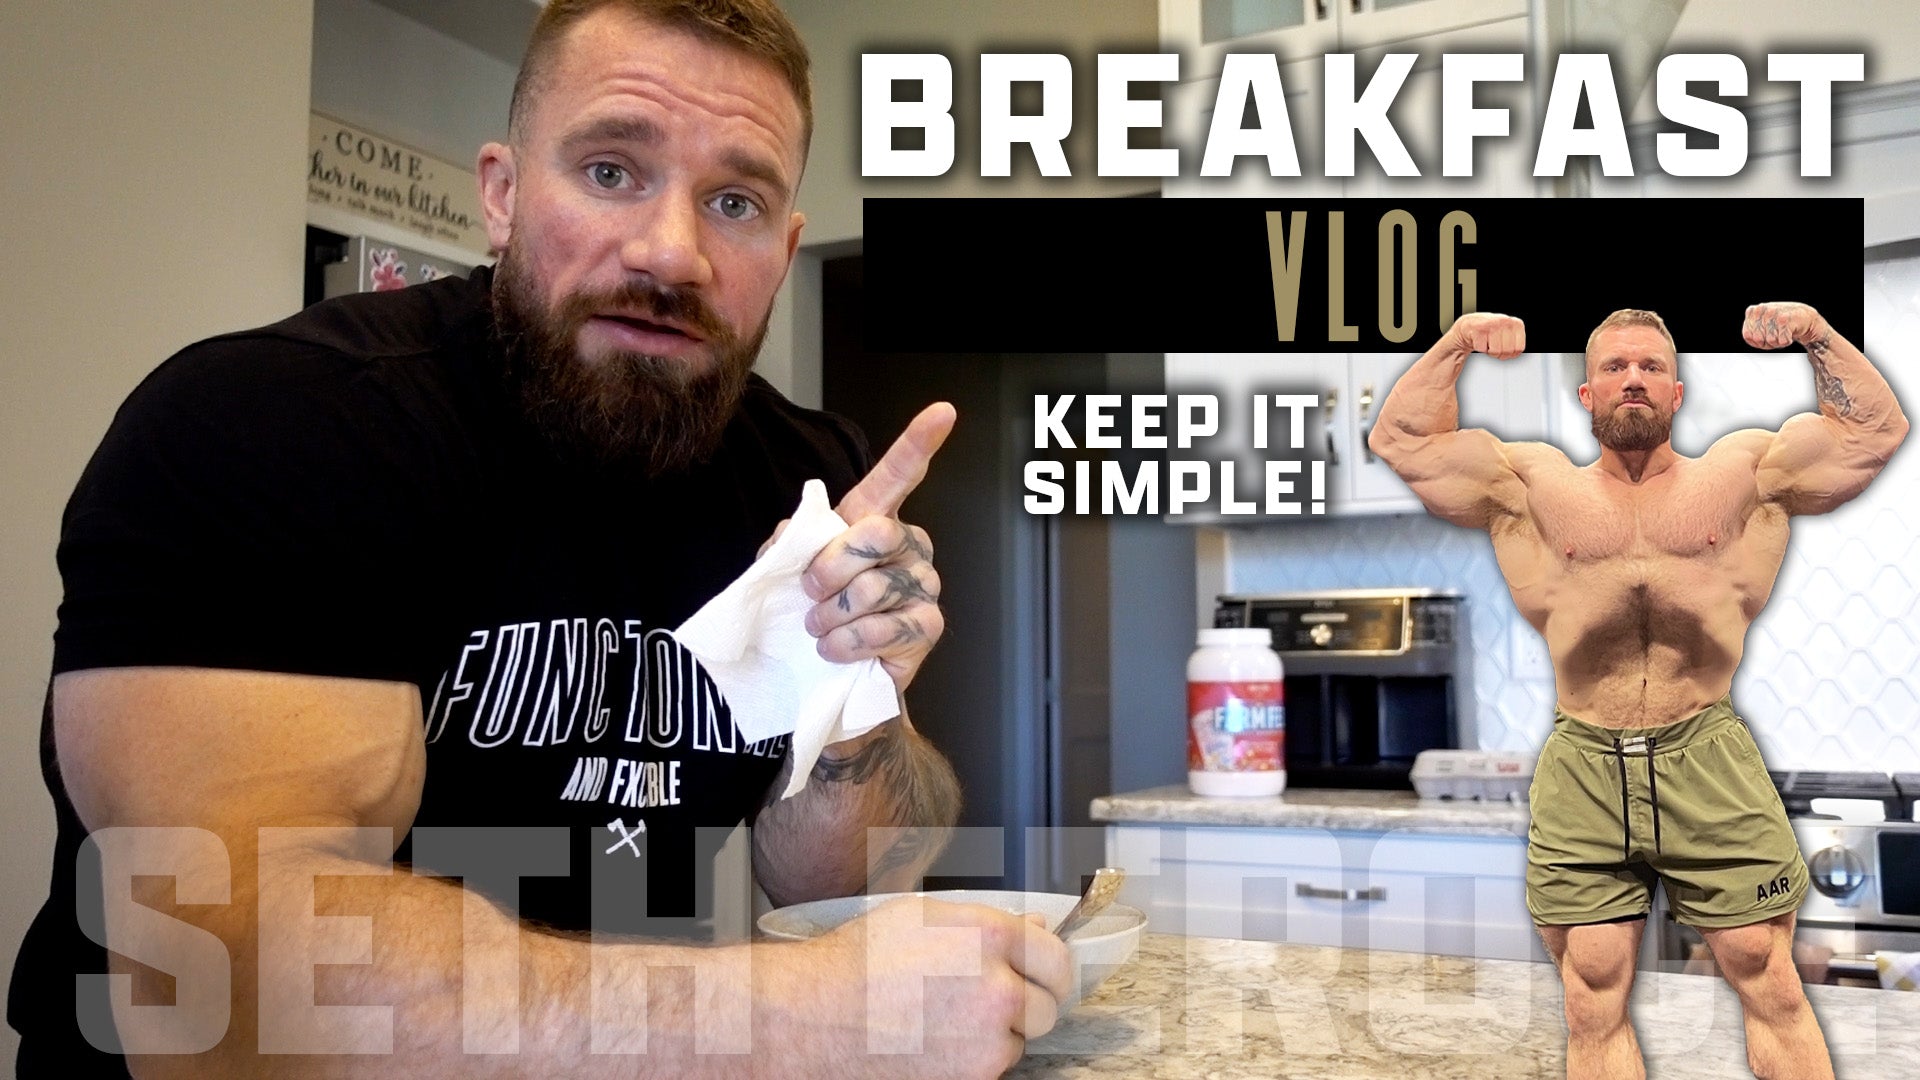 Seth Feroce's Morning Routine | Breakfast Vlog